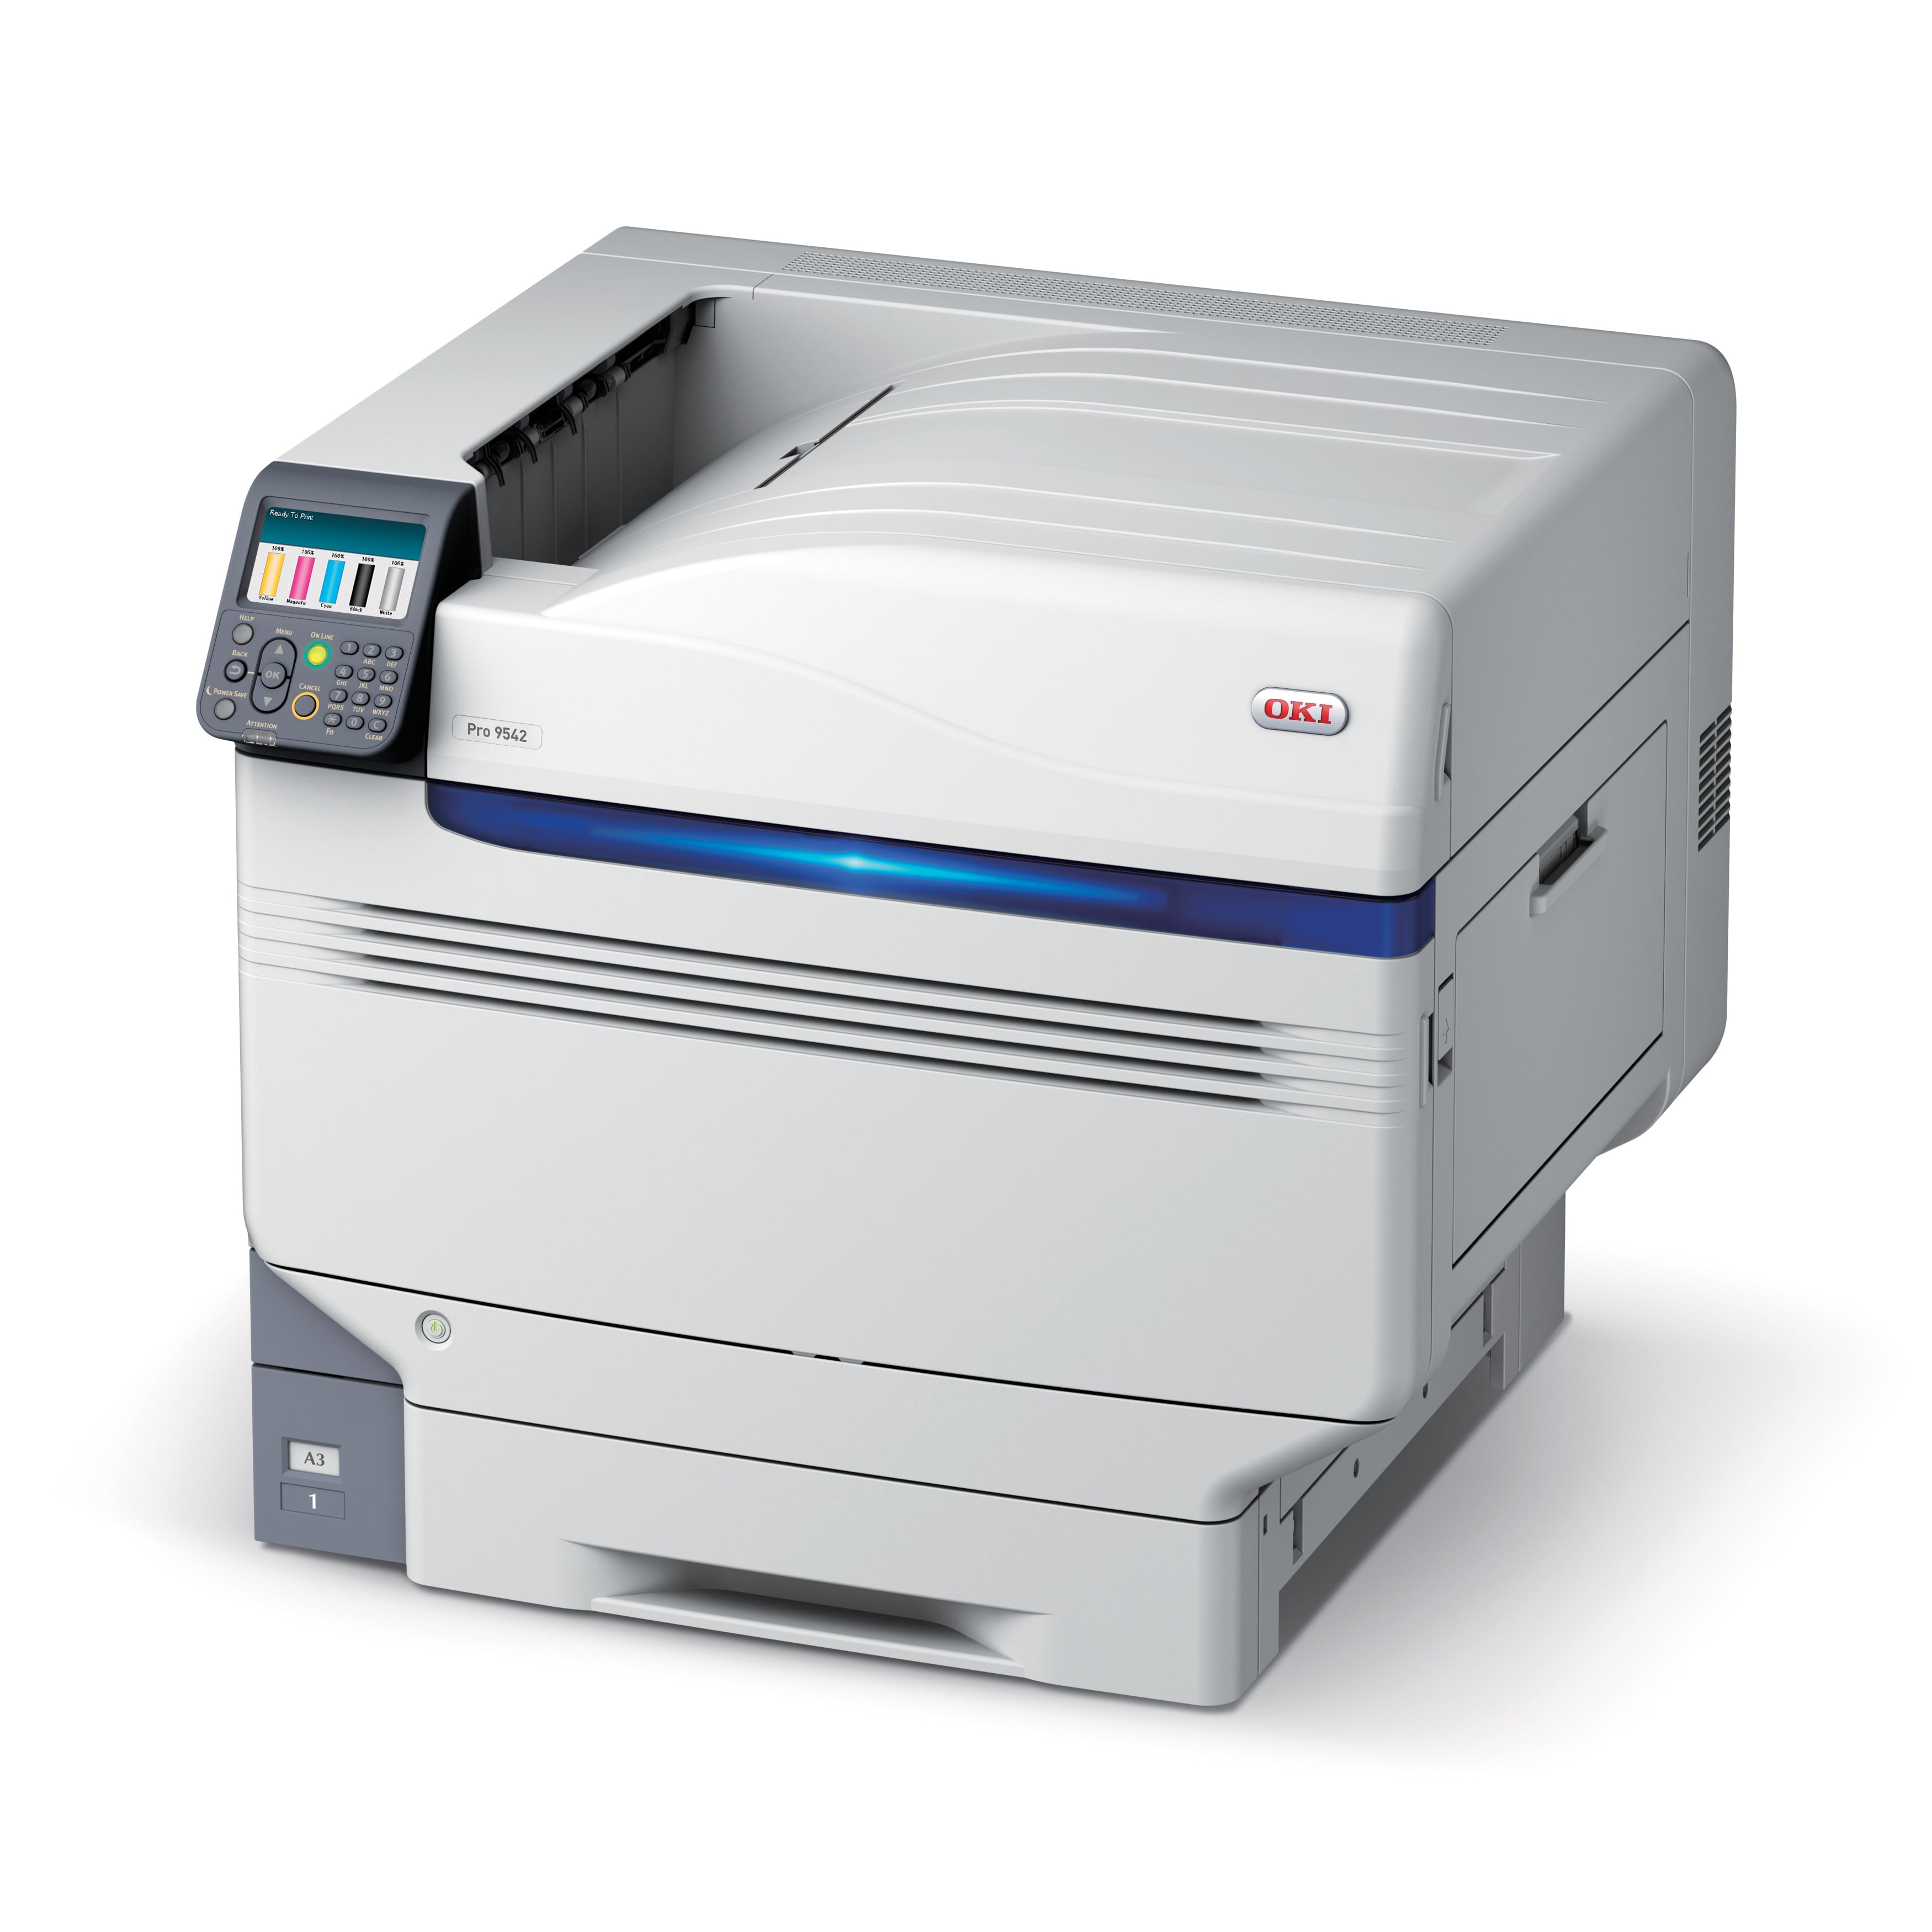 OKI Pro9542 Colour Printer Accessories